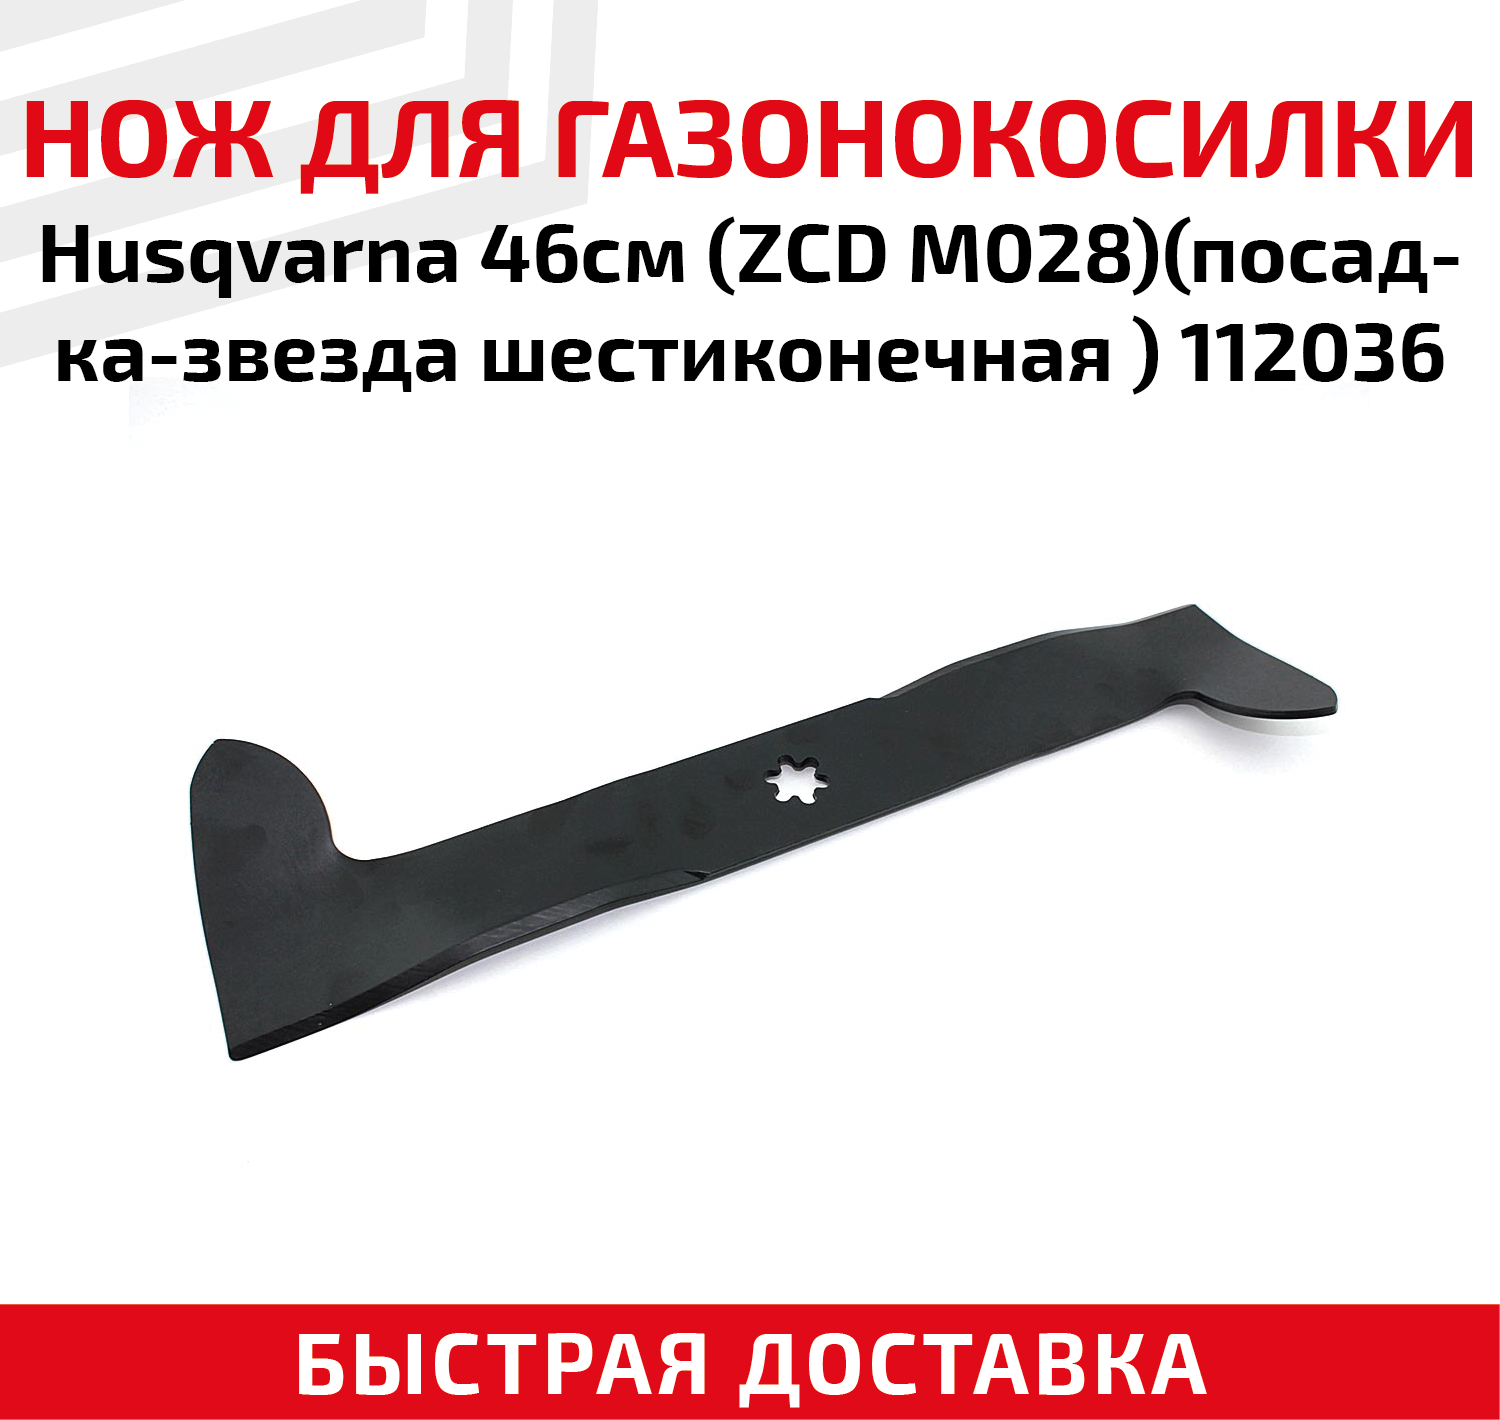 Нож для газонокосилки Husqvarna (ZCD M028) посадка-звезда шестиконечная 112036 (46 см)